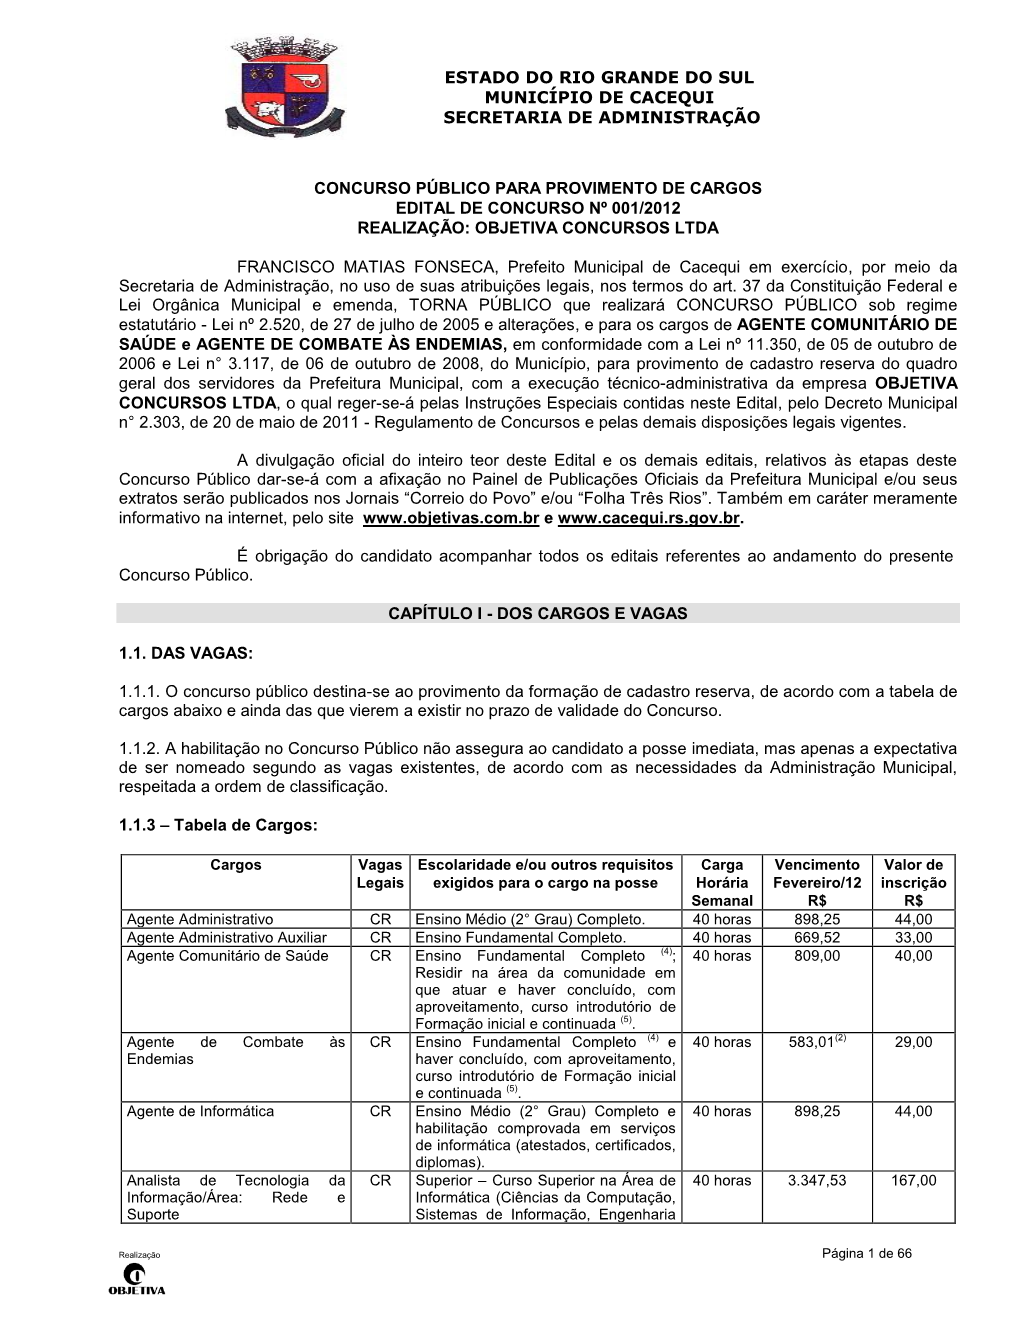 Concurso Público Para Provimento De Cargos Edital De Concurso Nº 001/2012 Realização: Objetiva Concursos Ltda